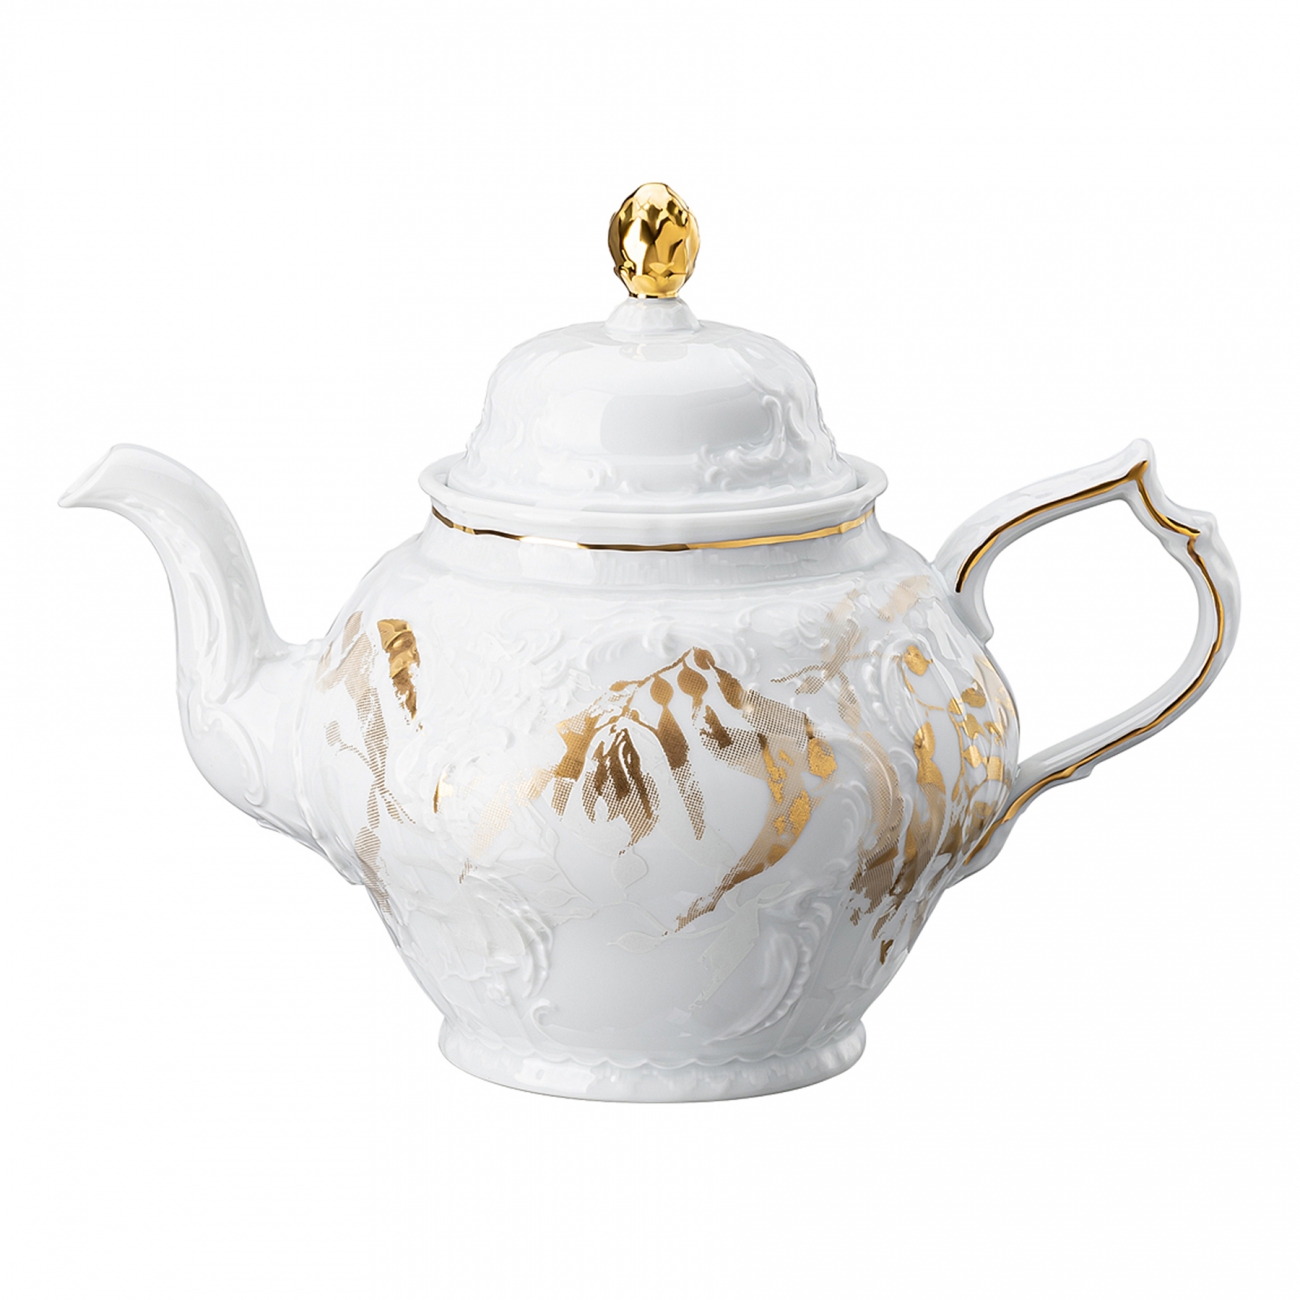 Rosenthal Heritage Midas Teapot